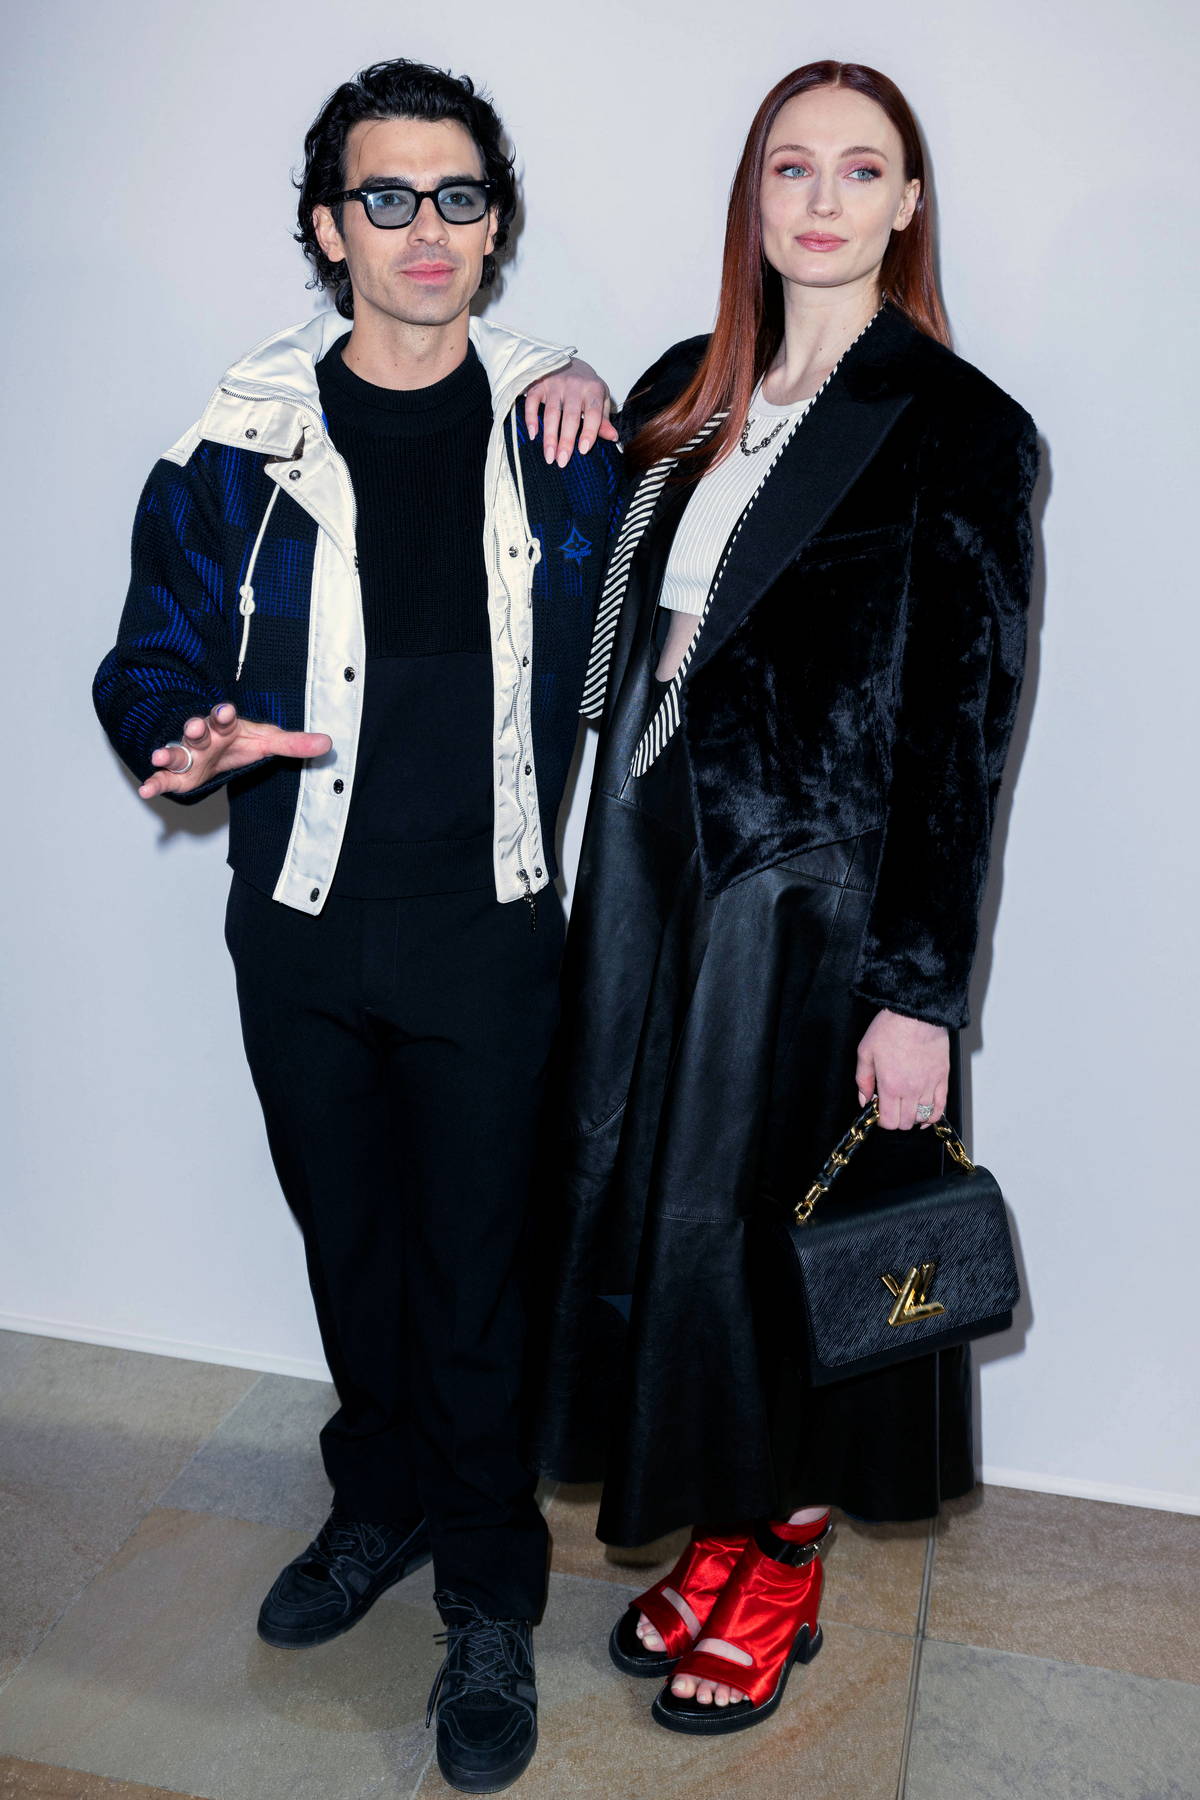 Sophie Turner wore Music Sheet Print set @ Louis Vuitton's Fall 2023 Paris  Fashion Week